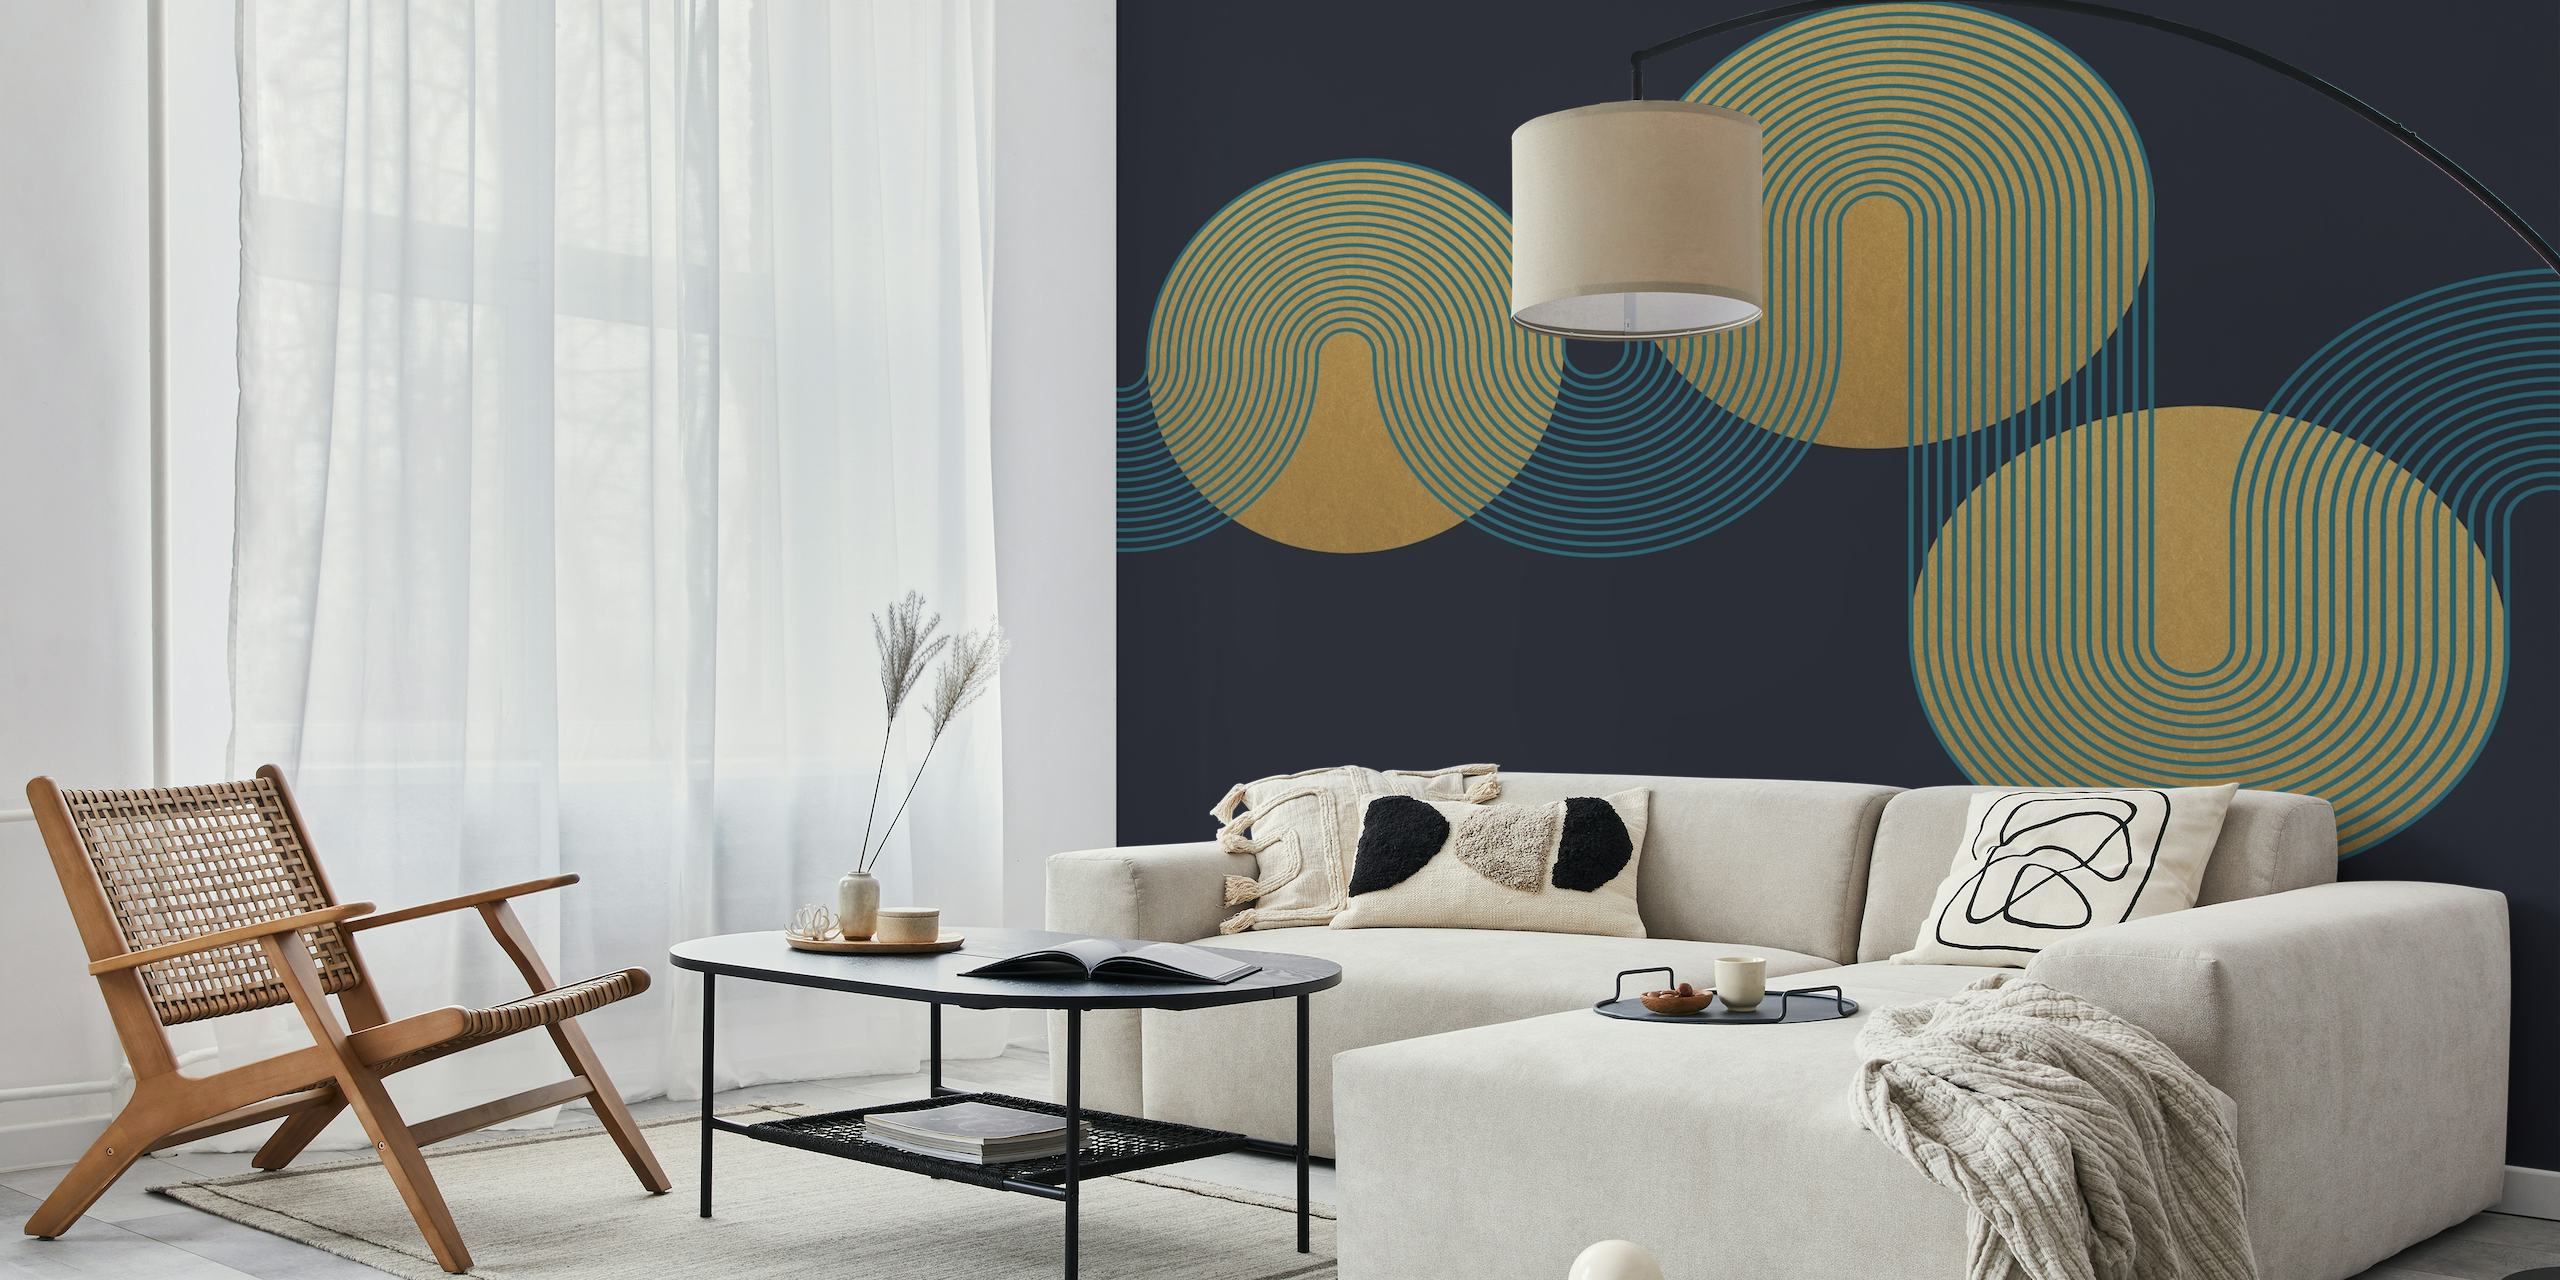 Vom Bauhaus inspirierte abstrakte Fototapete mit überlappenden Kreisen in Gold- und Beigetönen auf marineblauem Hintergrund